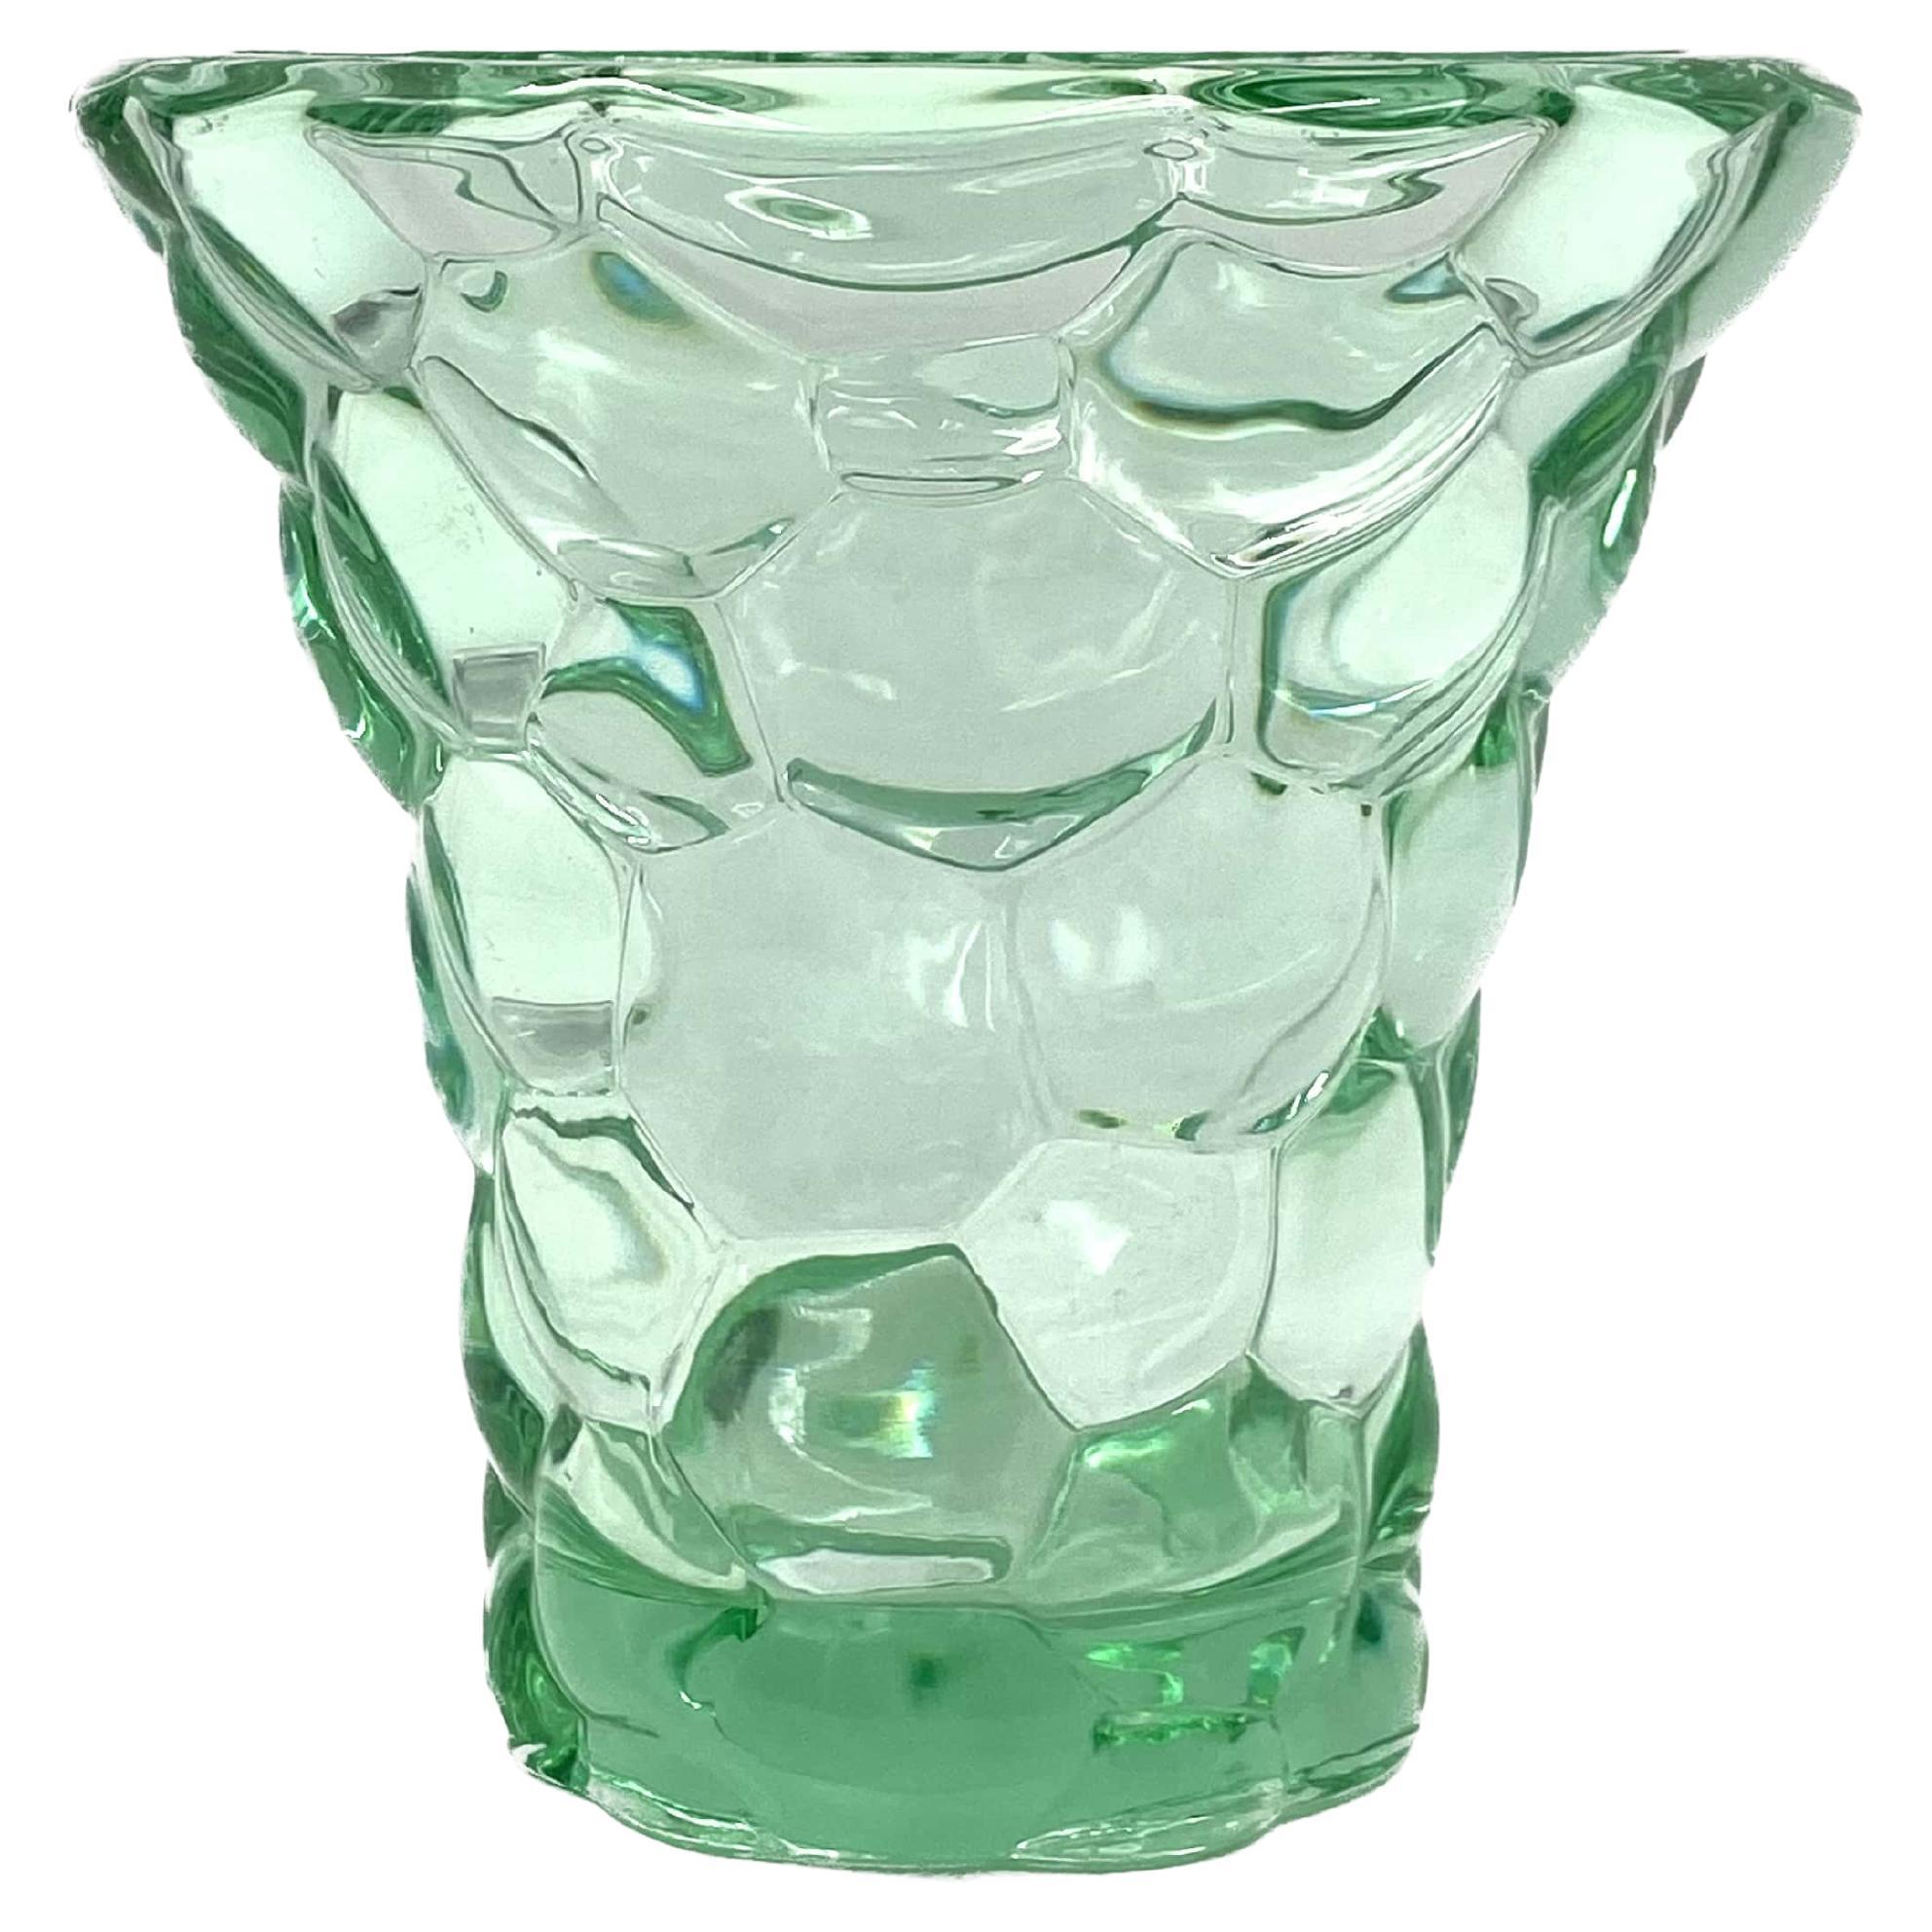 Pierre D'Avesn, Vase en cristal vert d'eau "Nid d'abeille", France 1930